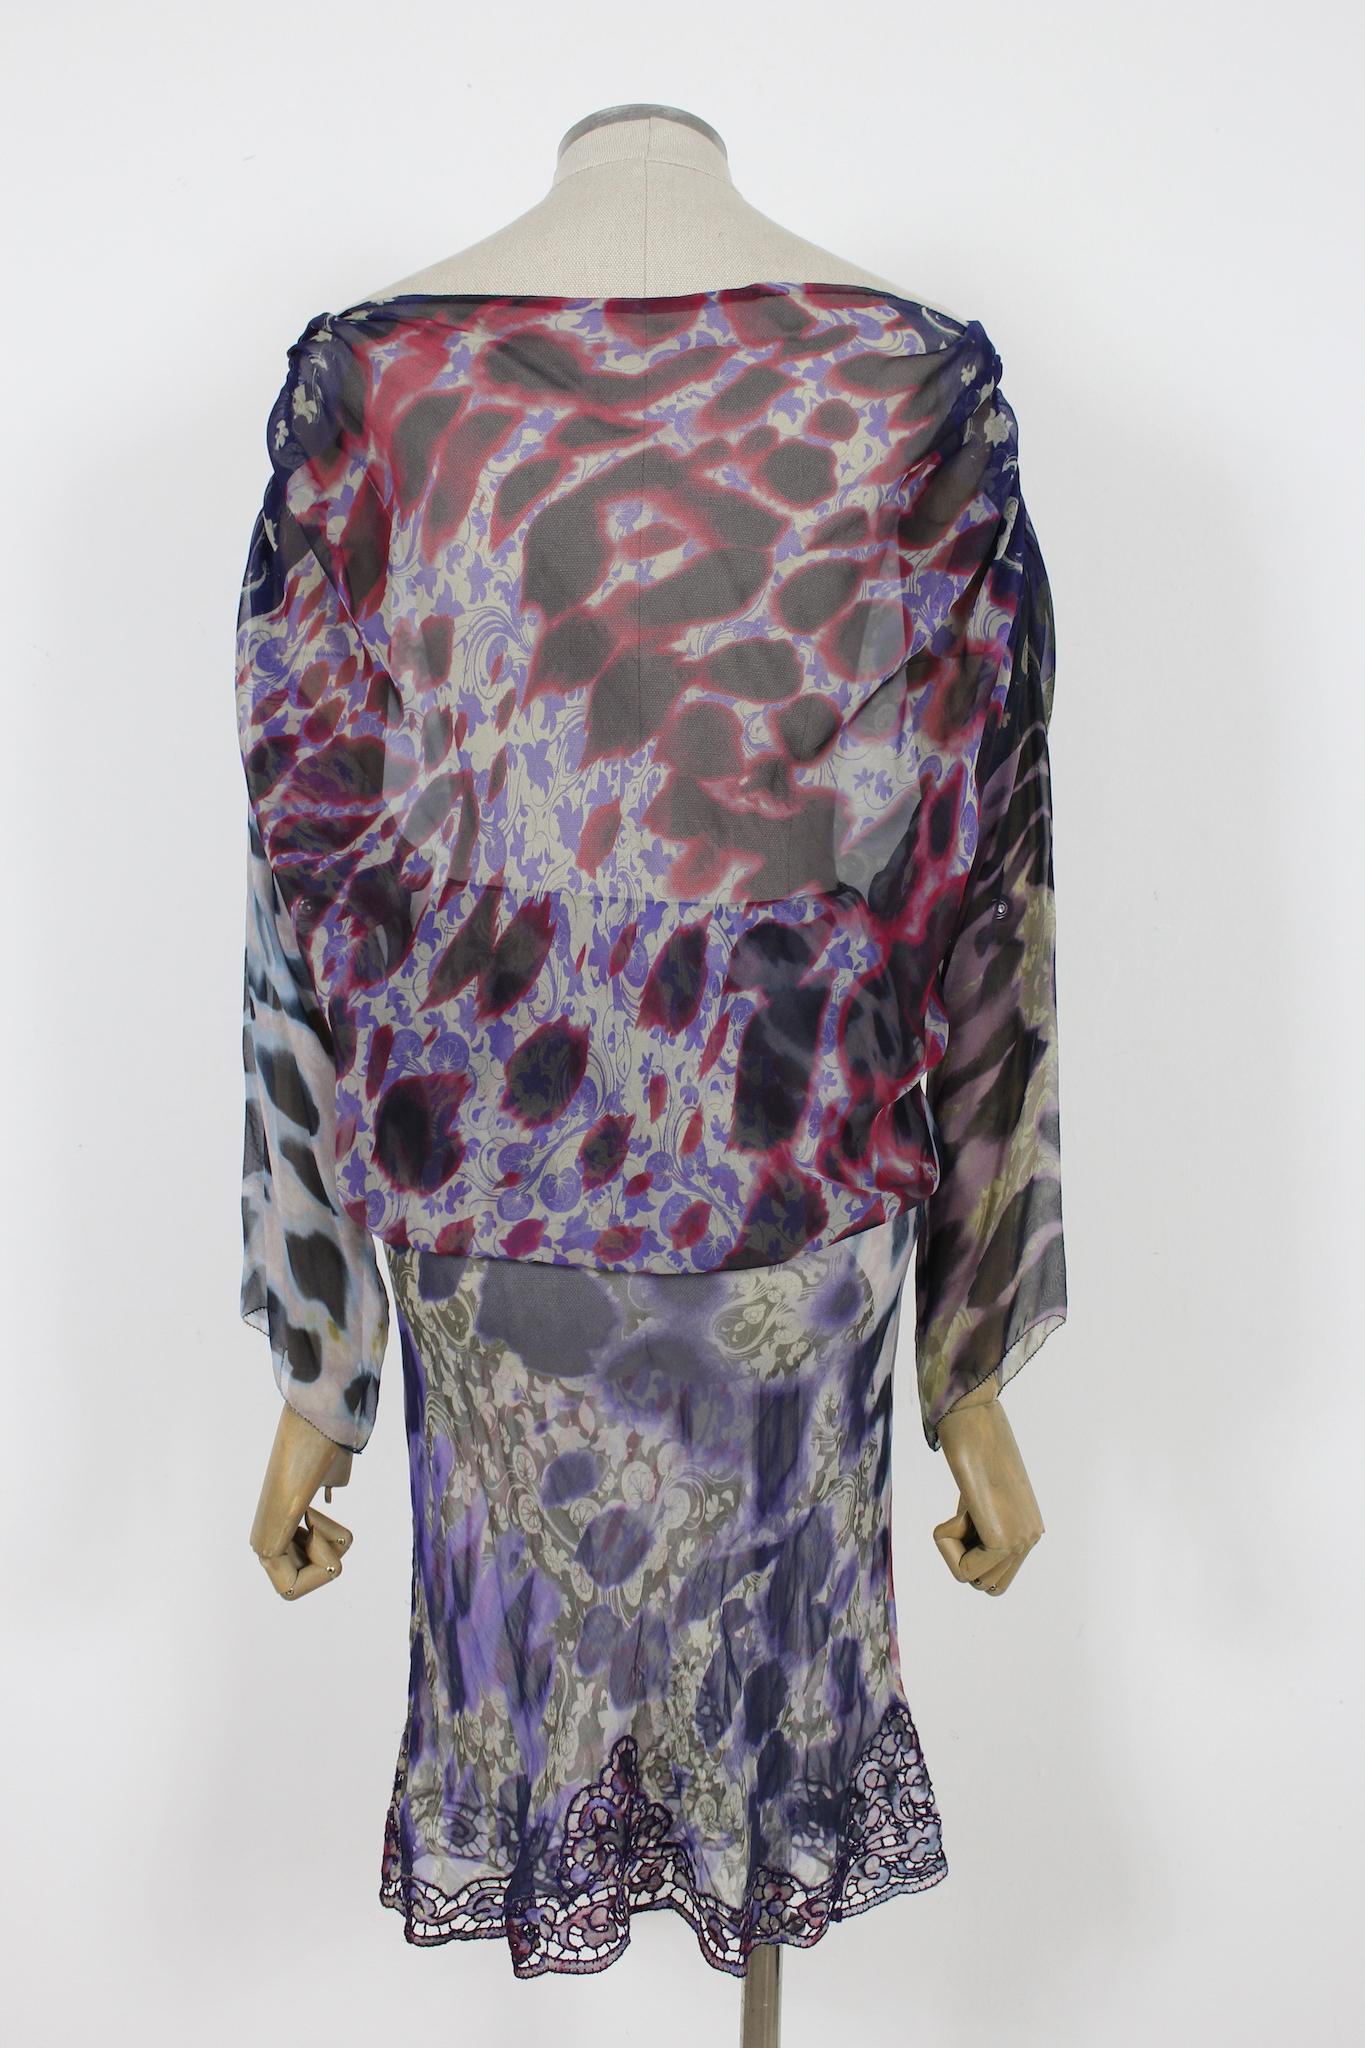 Cette robe de soirée Ermanno Scervino est confectionnée en soie douce et présente un superbe imprimé floral violet et rouge. La robe présente une silhouette évasée et une taille élastique, offrant une coupe confortable et flatteuse. L'ourlet de la